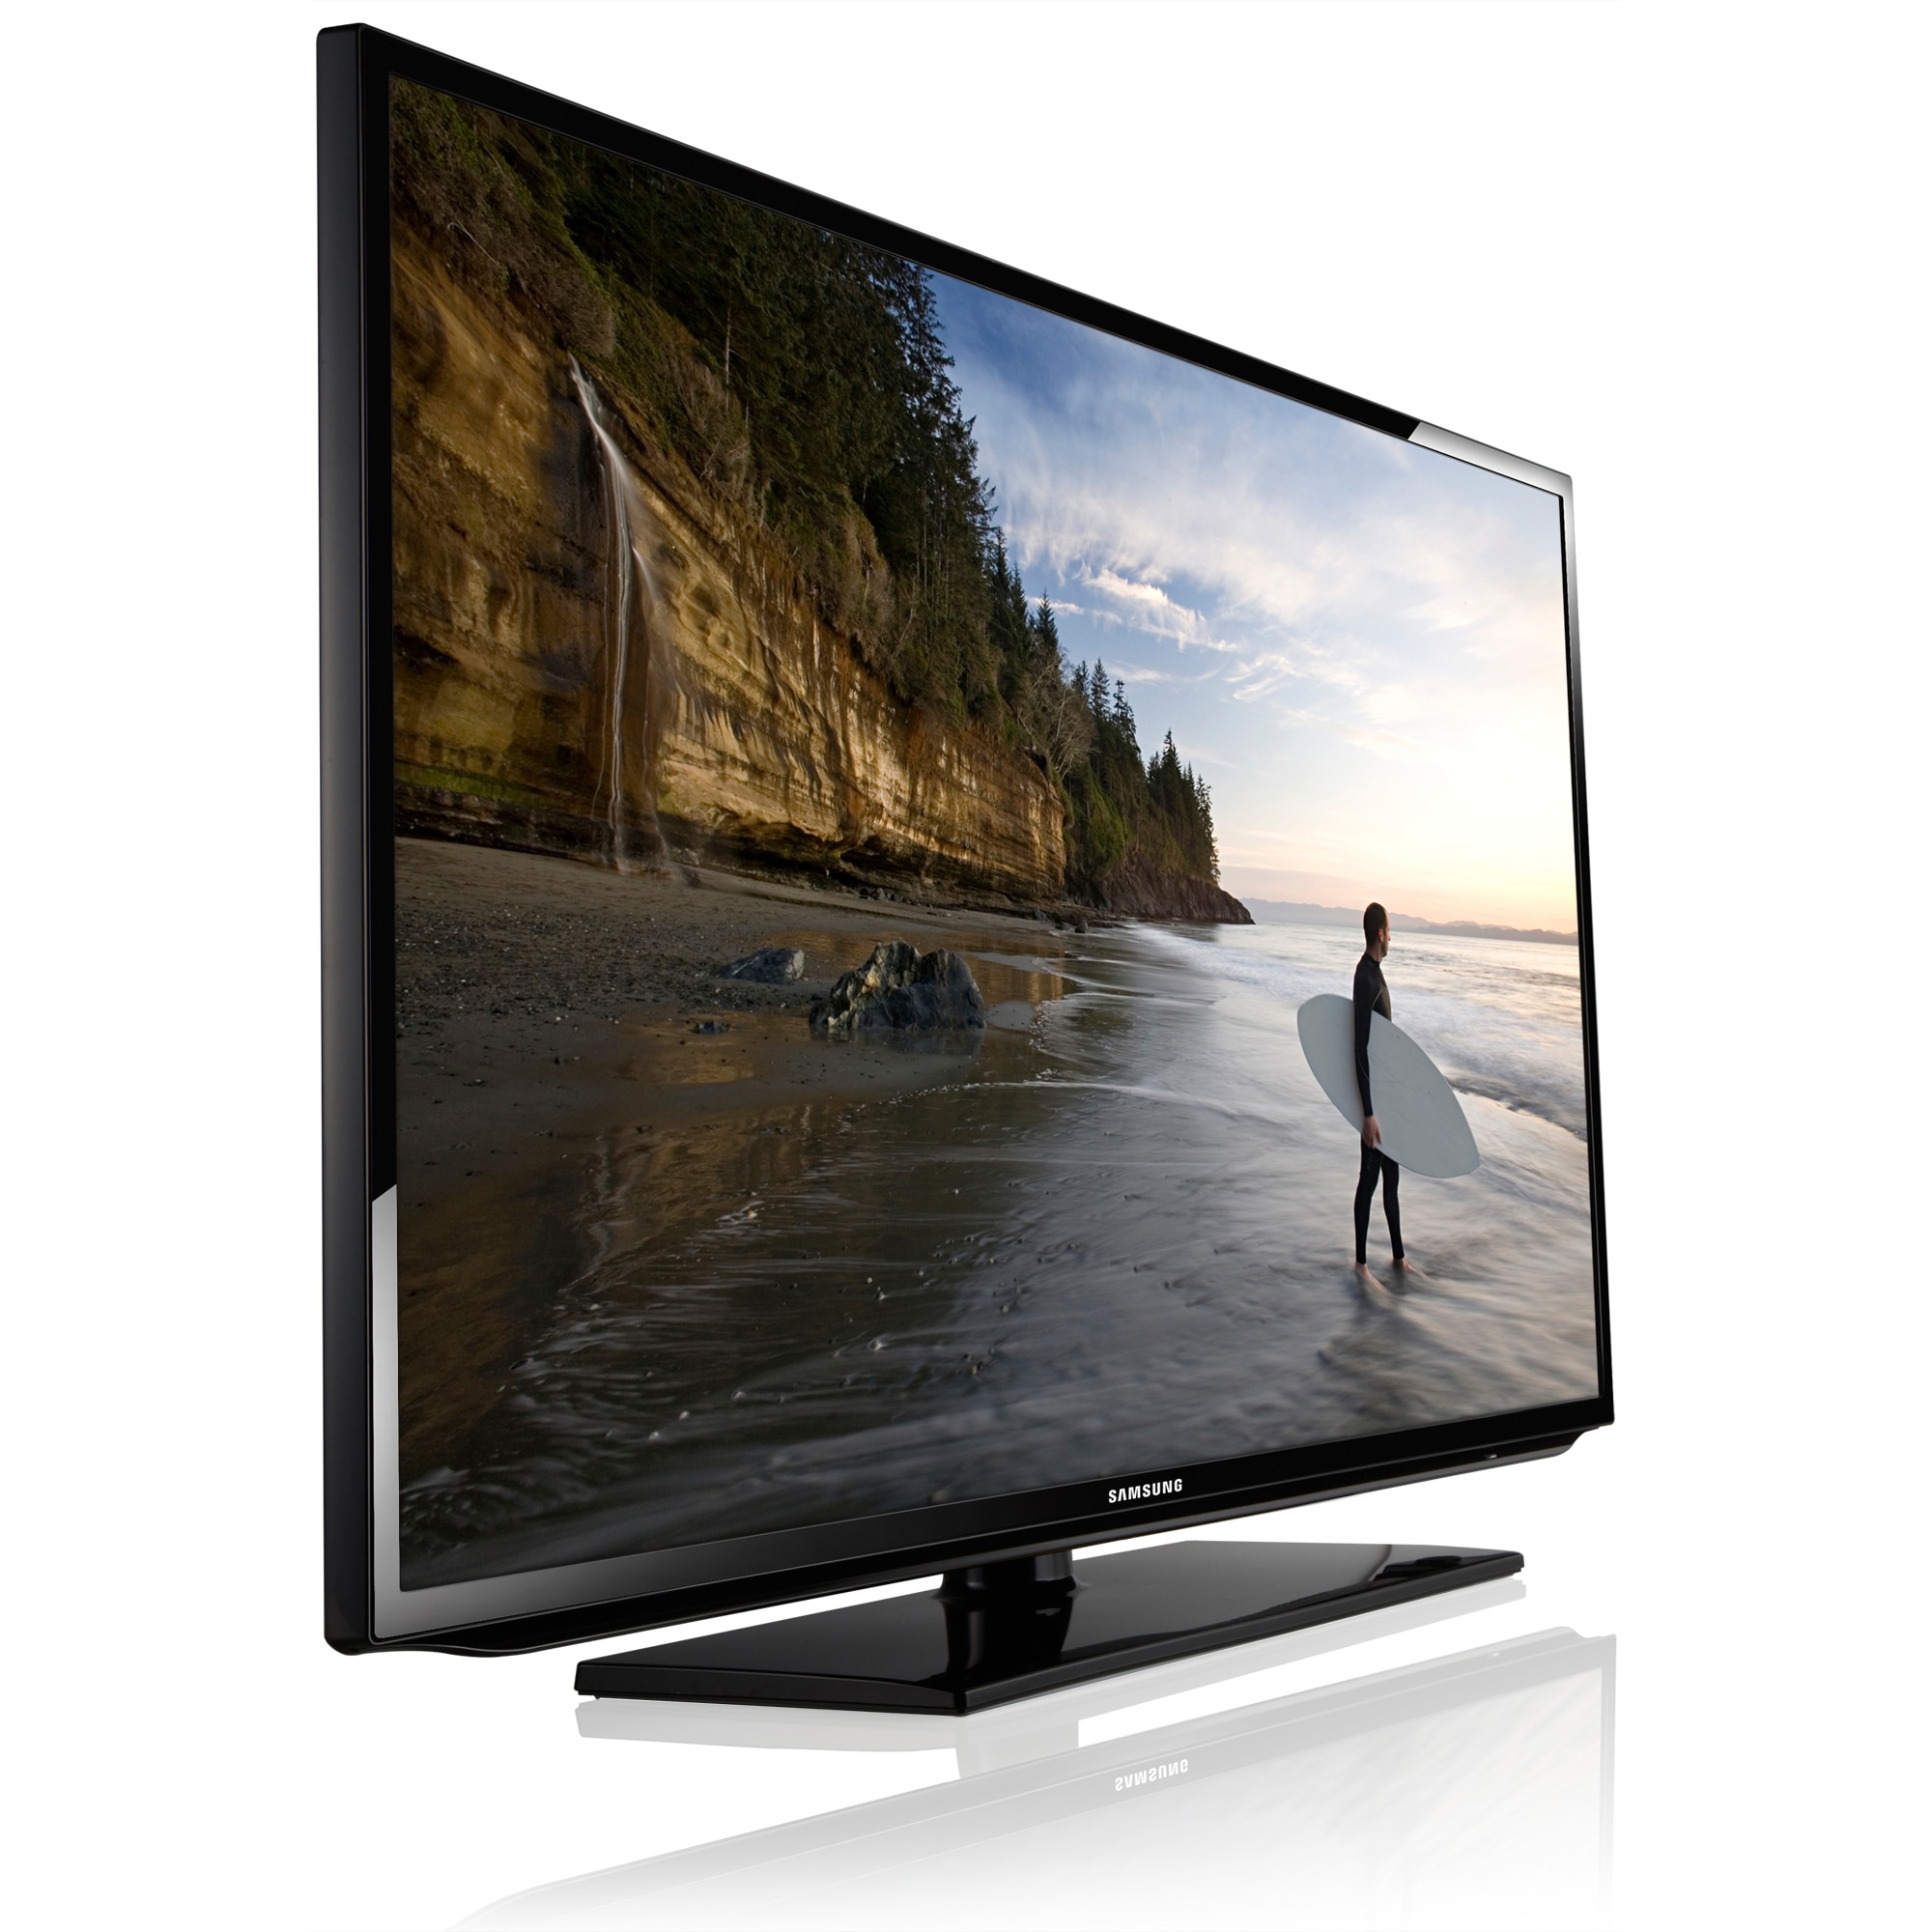 Купить телевизор в великом новгороде. Samsung Smart TV 32 ue32es5507v. Samsung ue40es5537k. Телевизор Samsung ue50es5507 50". Телевизор Samsung ue40eh5300 40".